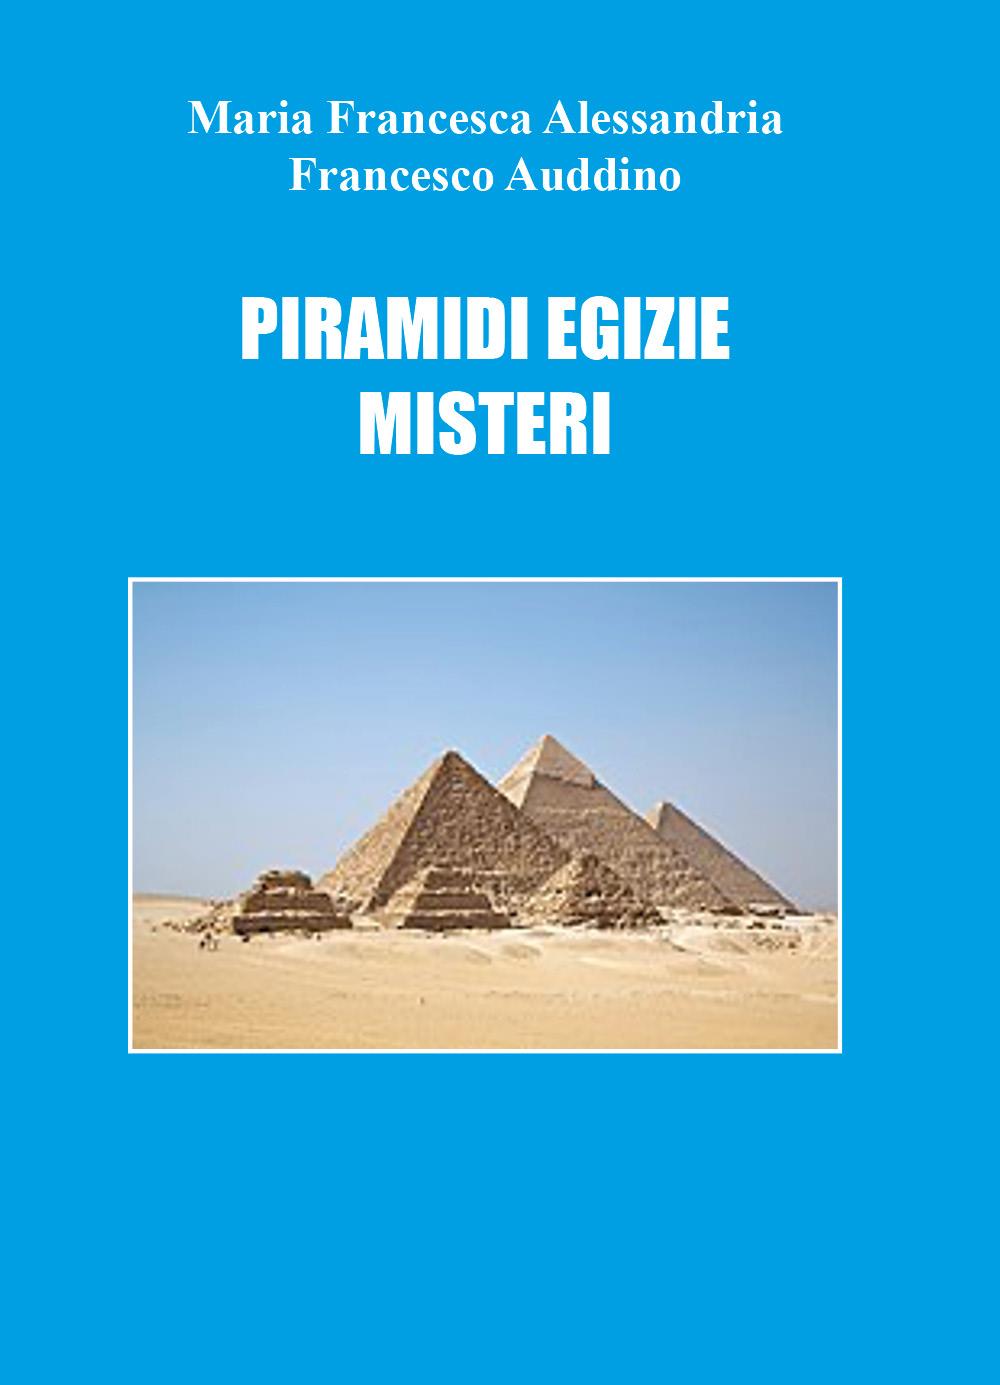 Piramidi egizie: misteri